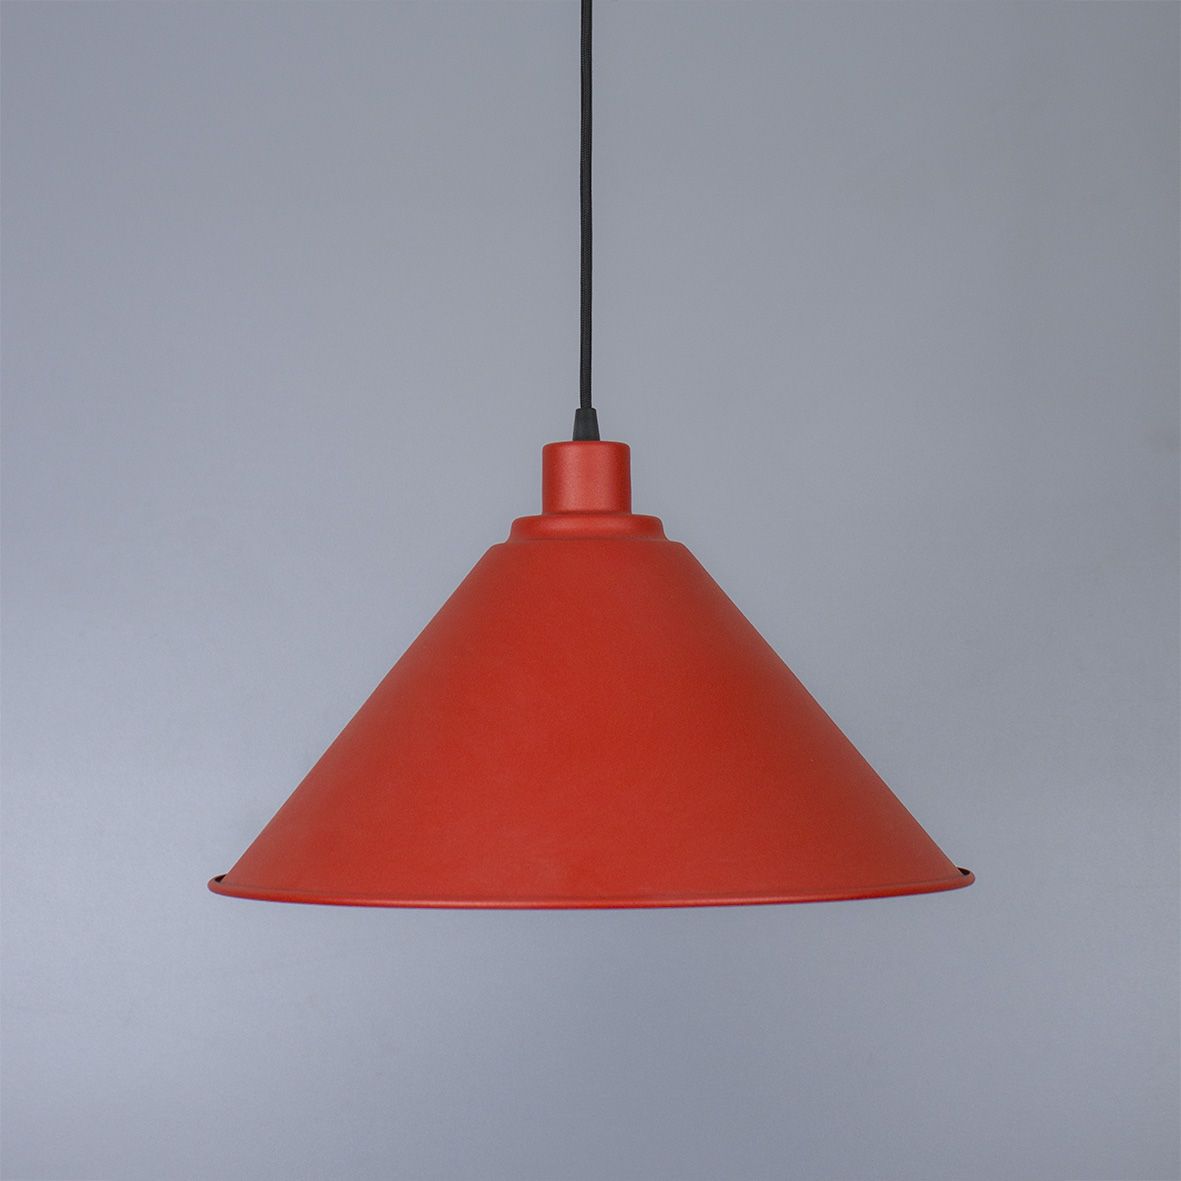 Suspension lamp Etna red / black